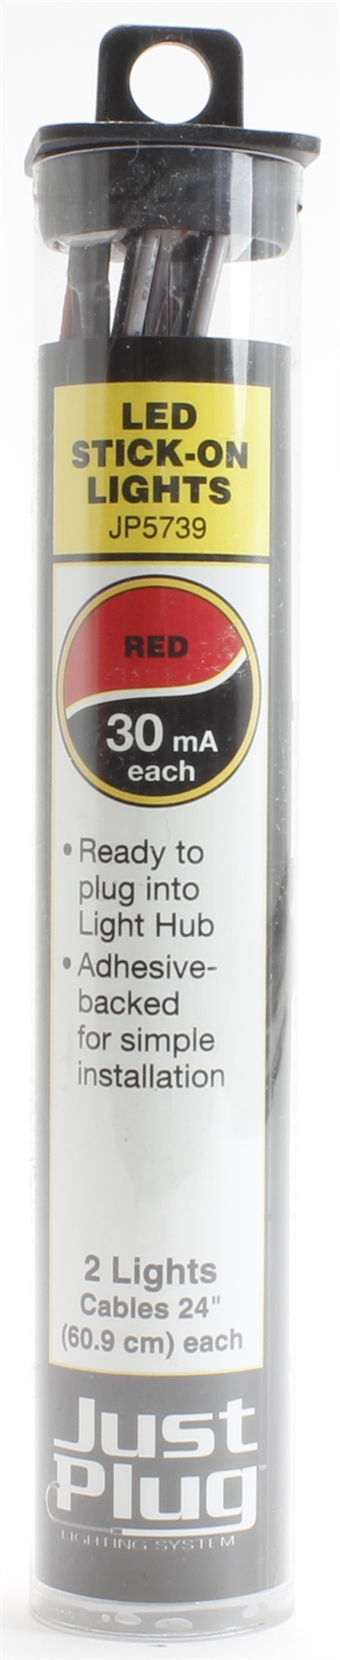 Red LED stick-on lights for Just Plug lighting system